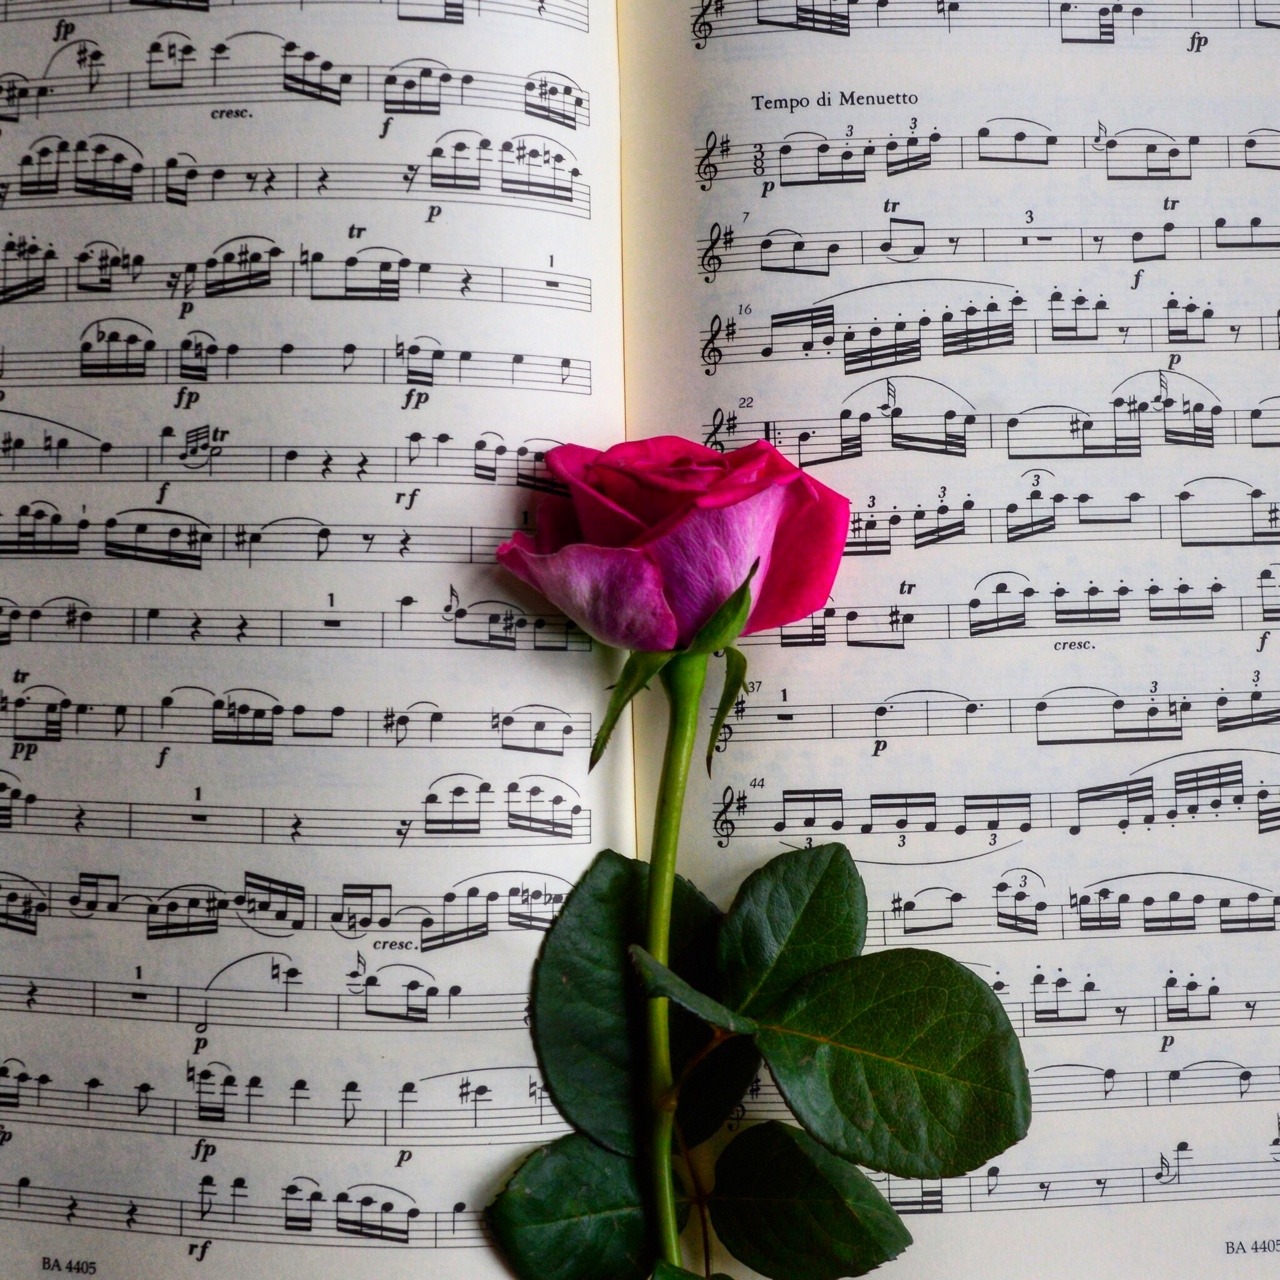 viola sheet music Tumblr